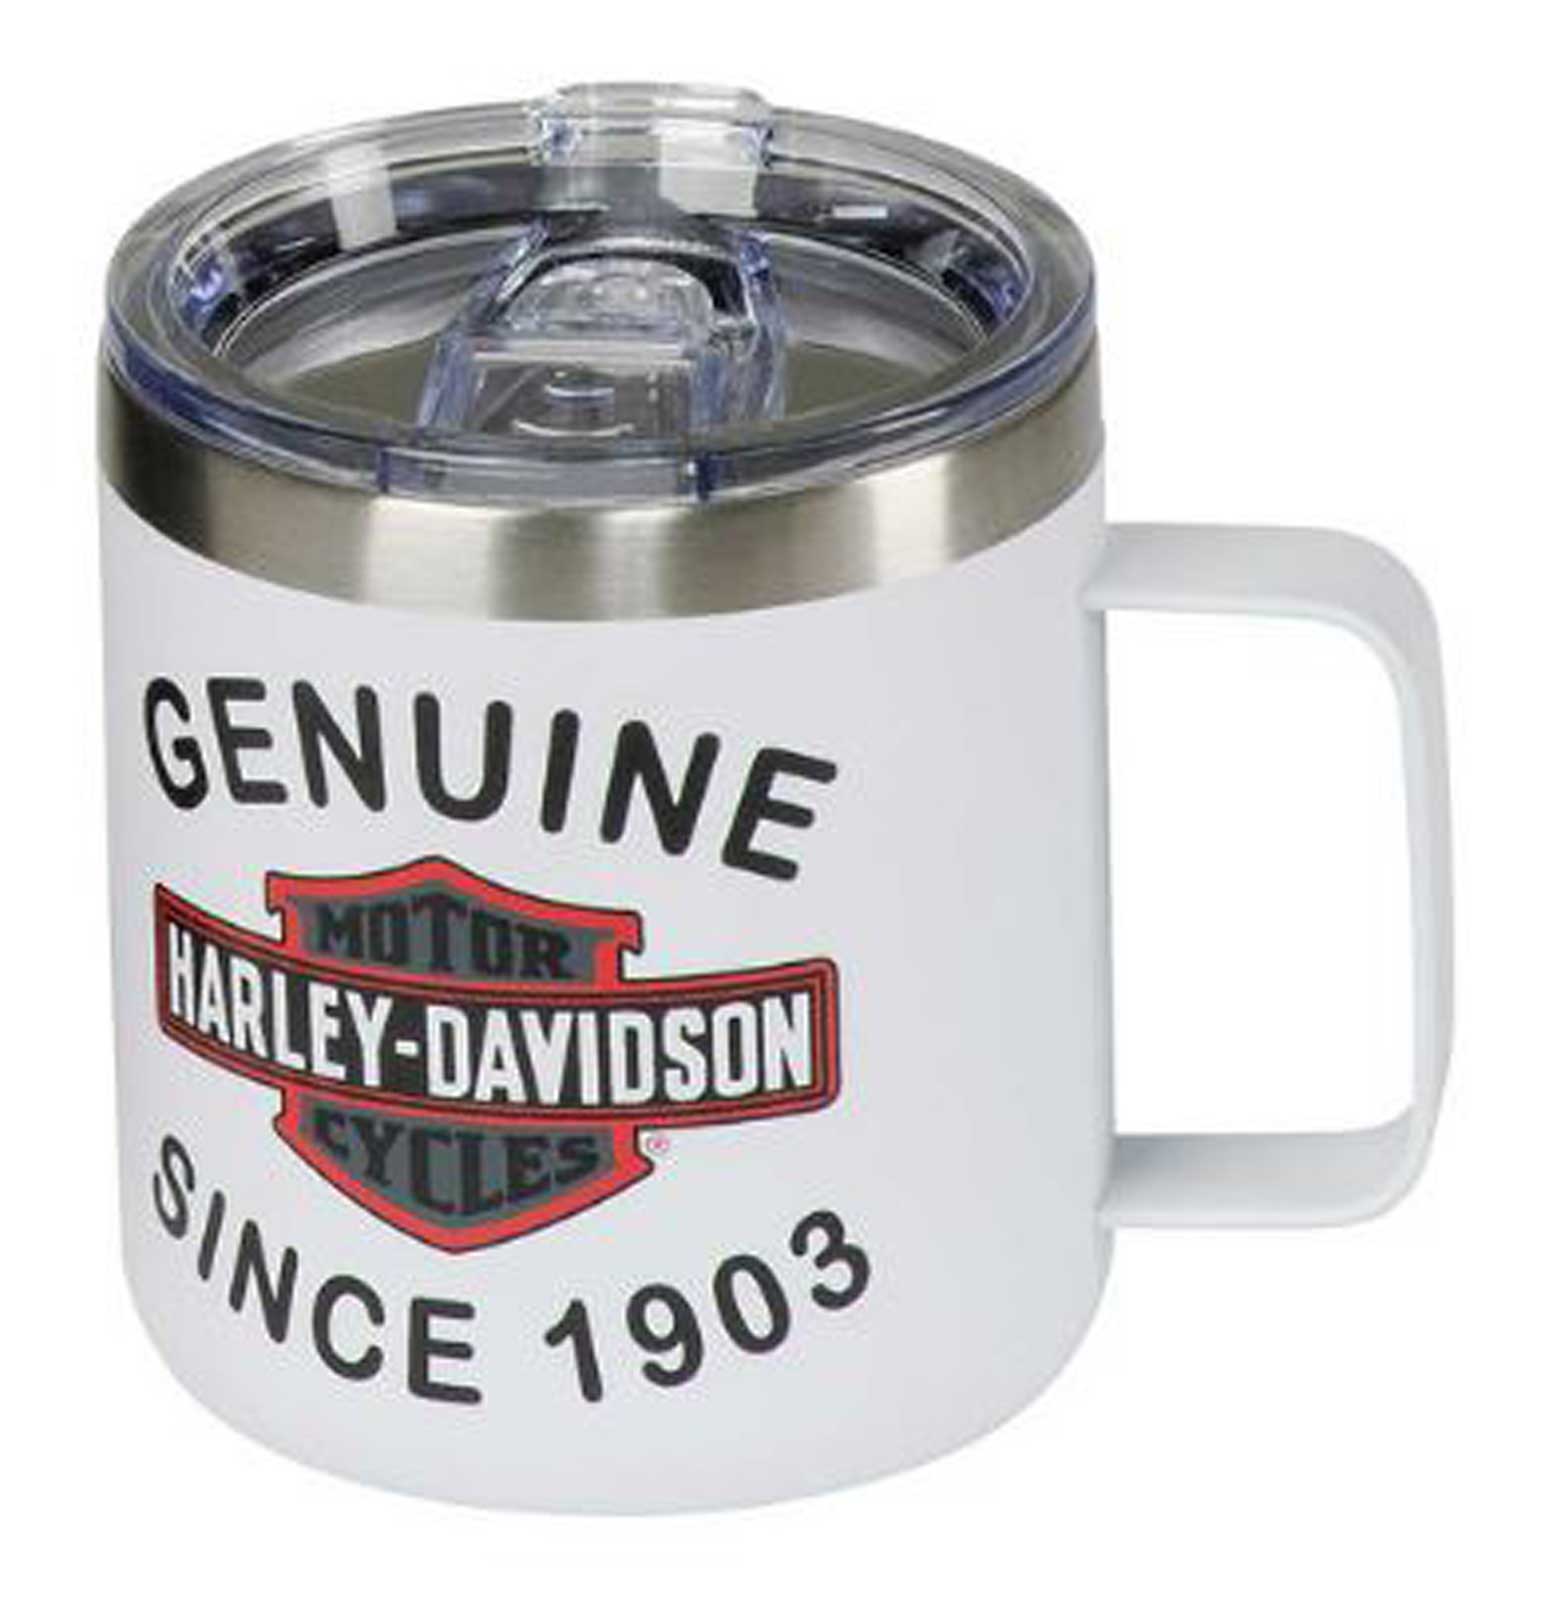 Harley-Davidson Copper Skull Travel Mug & Water Bottle Set - Stainless Steel